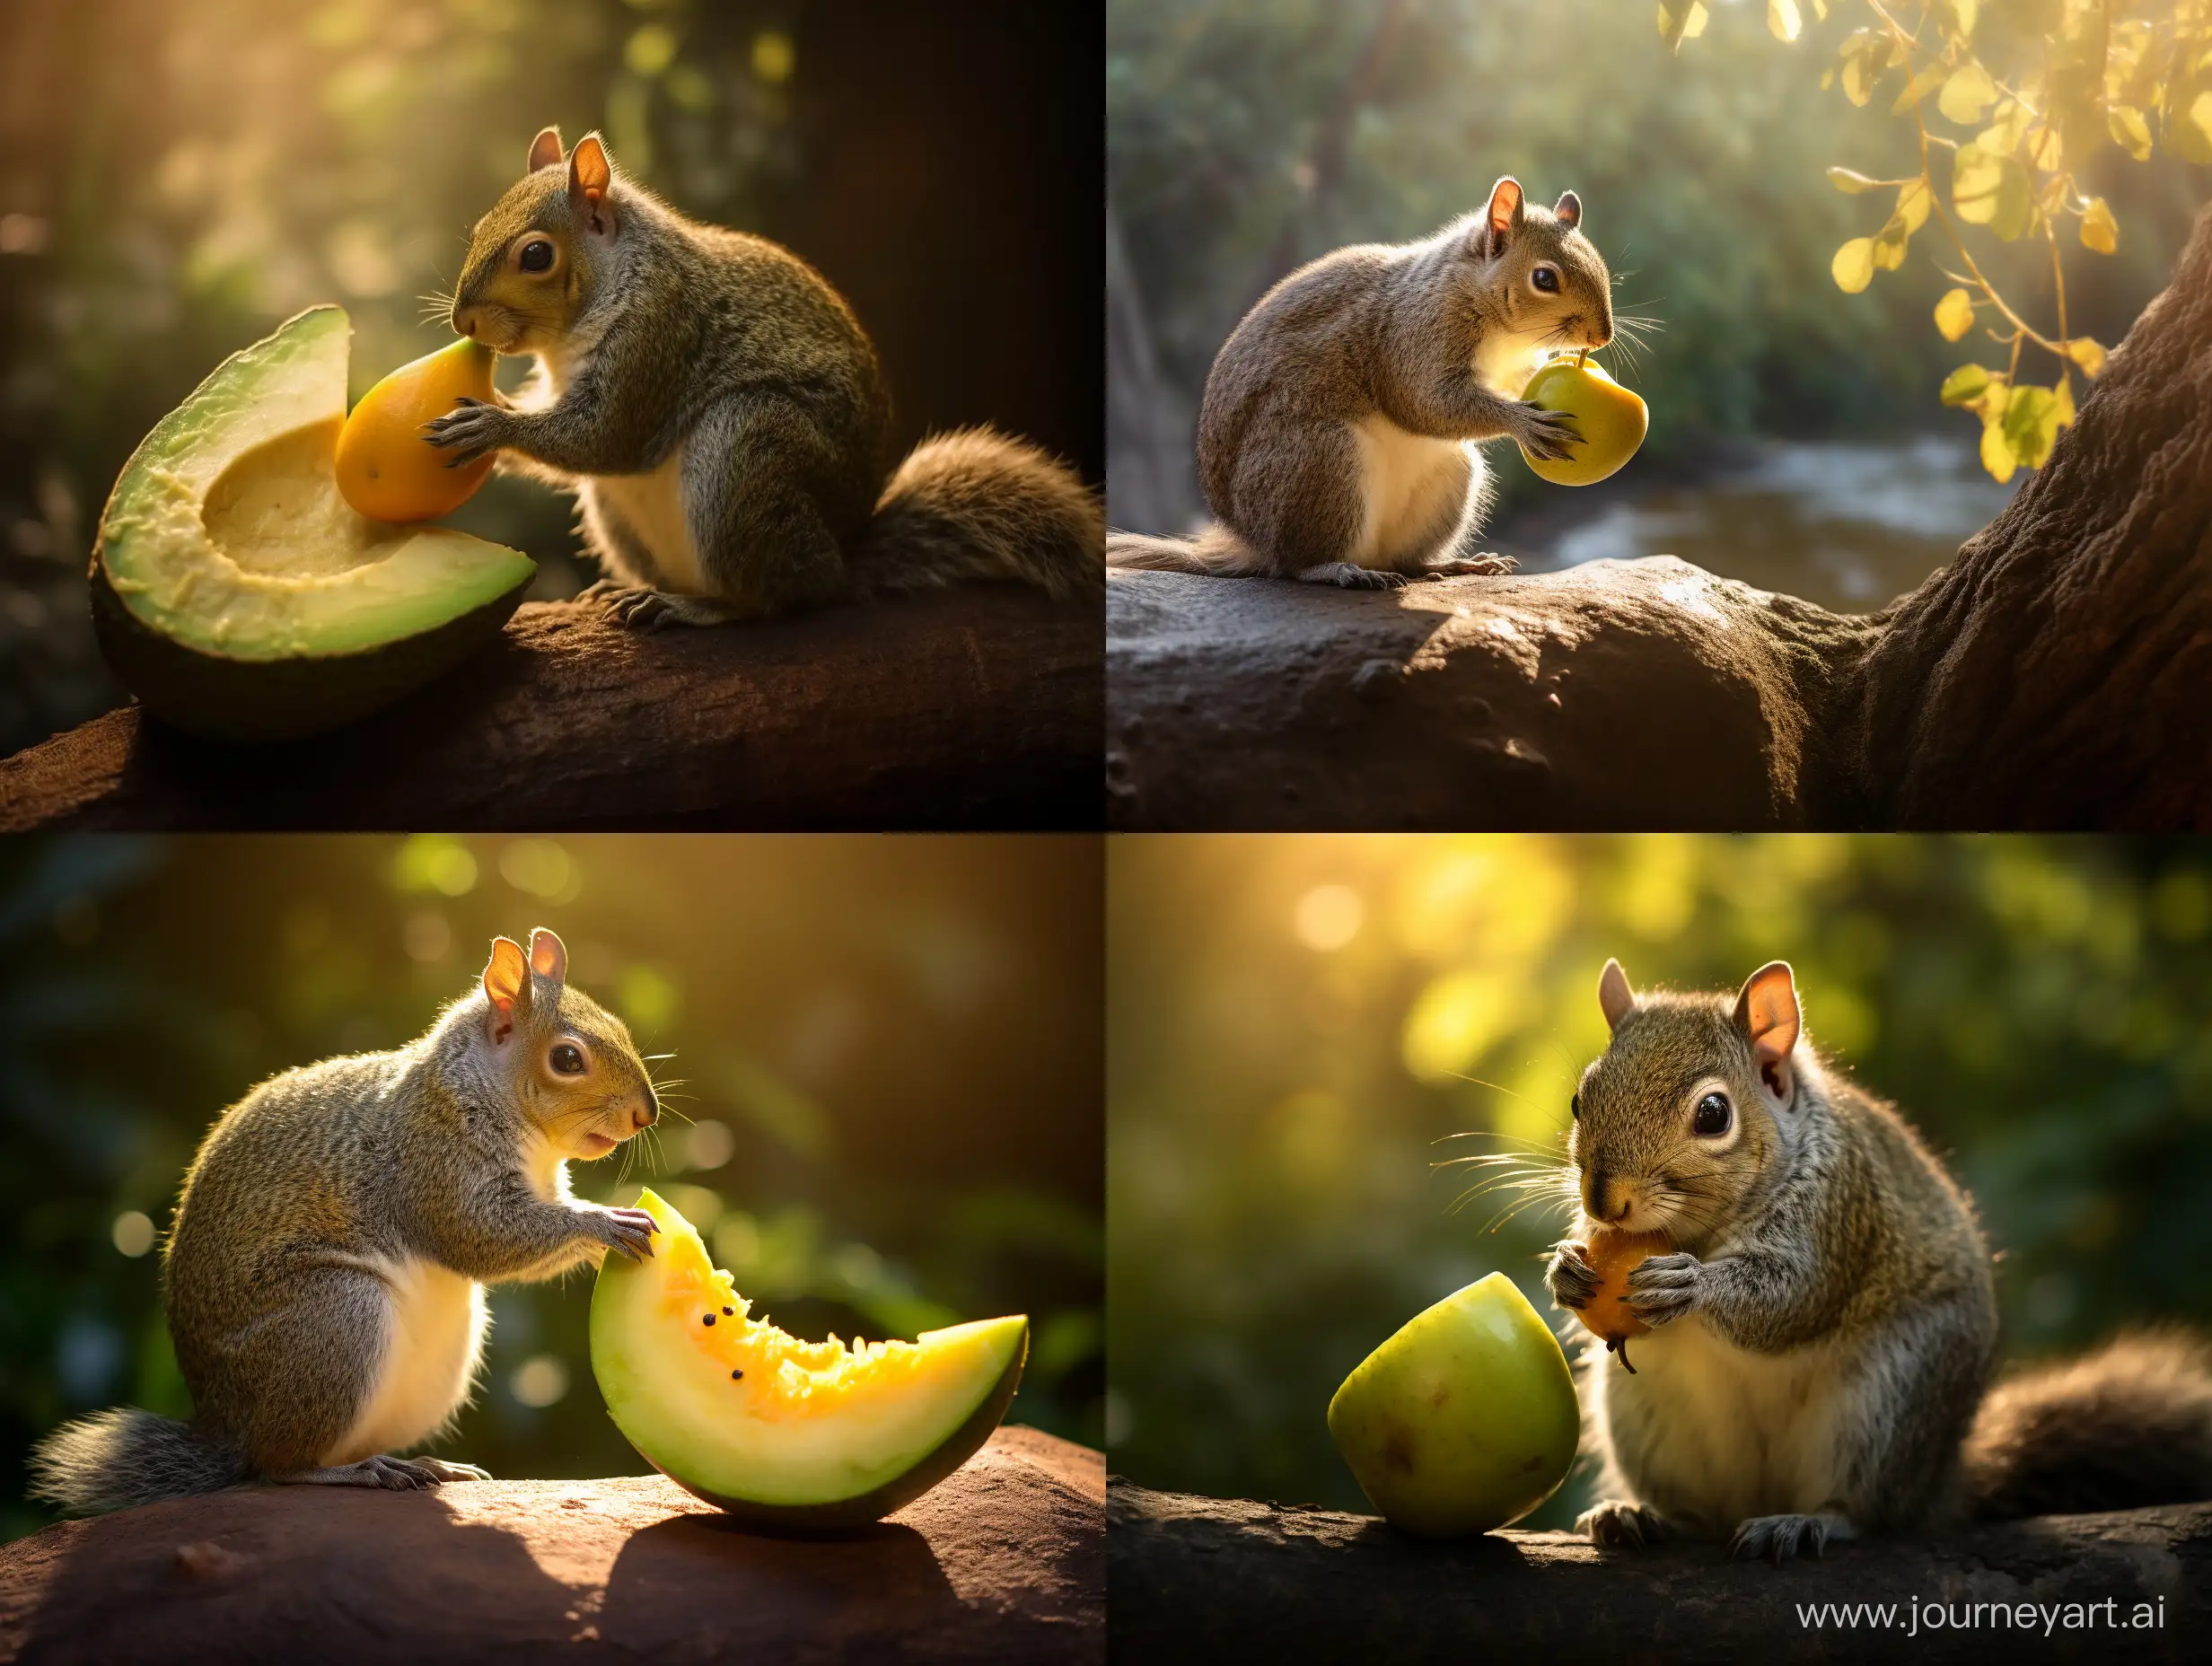 A squirrel eating an avocado, wildlife photography, golden hour